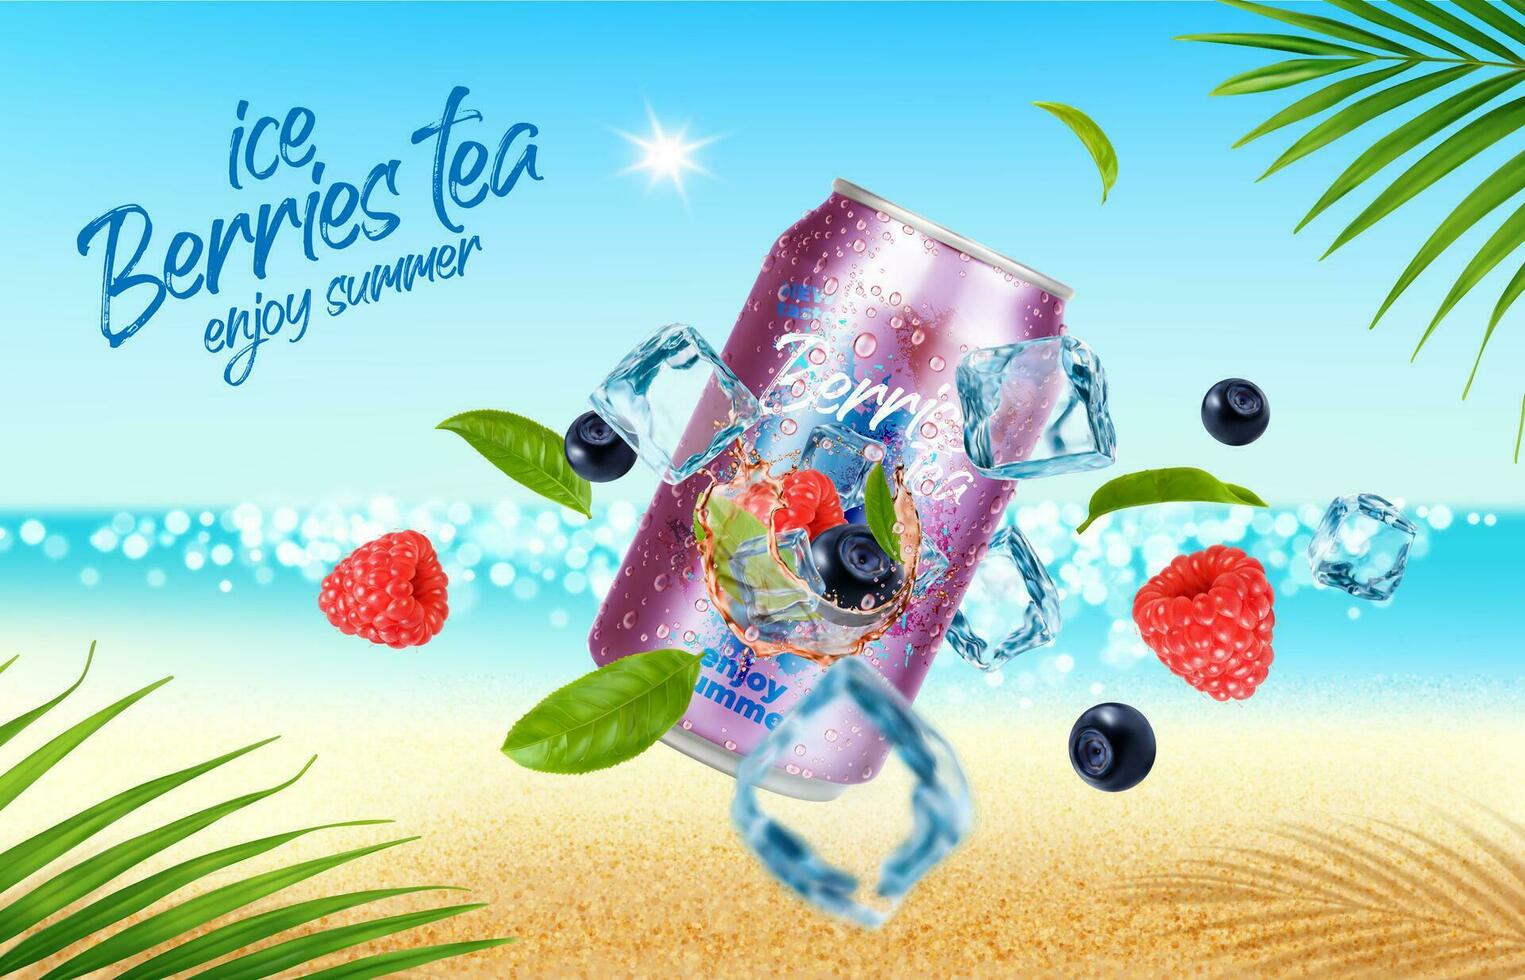 salvaje bayas té lata y hielo cubitos en verano playa vector